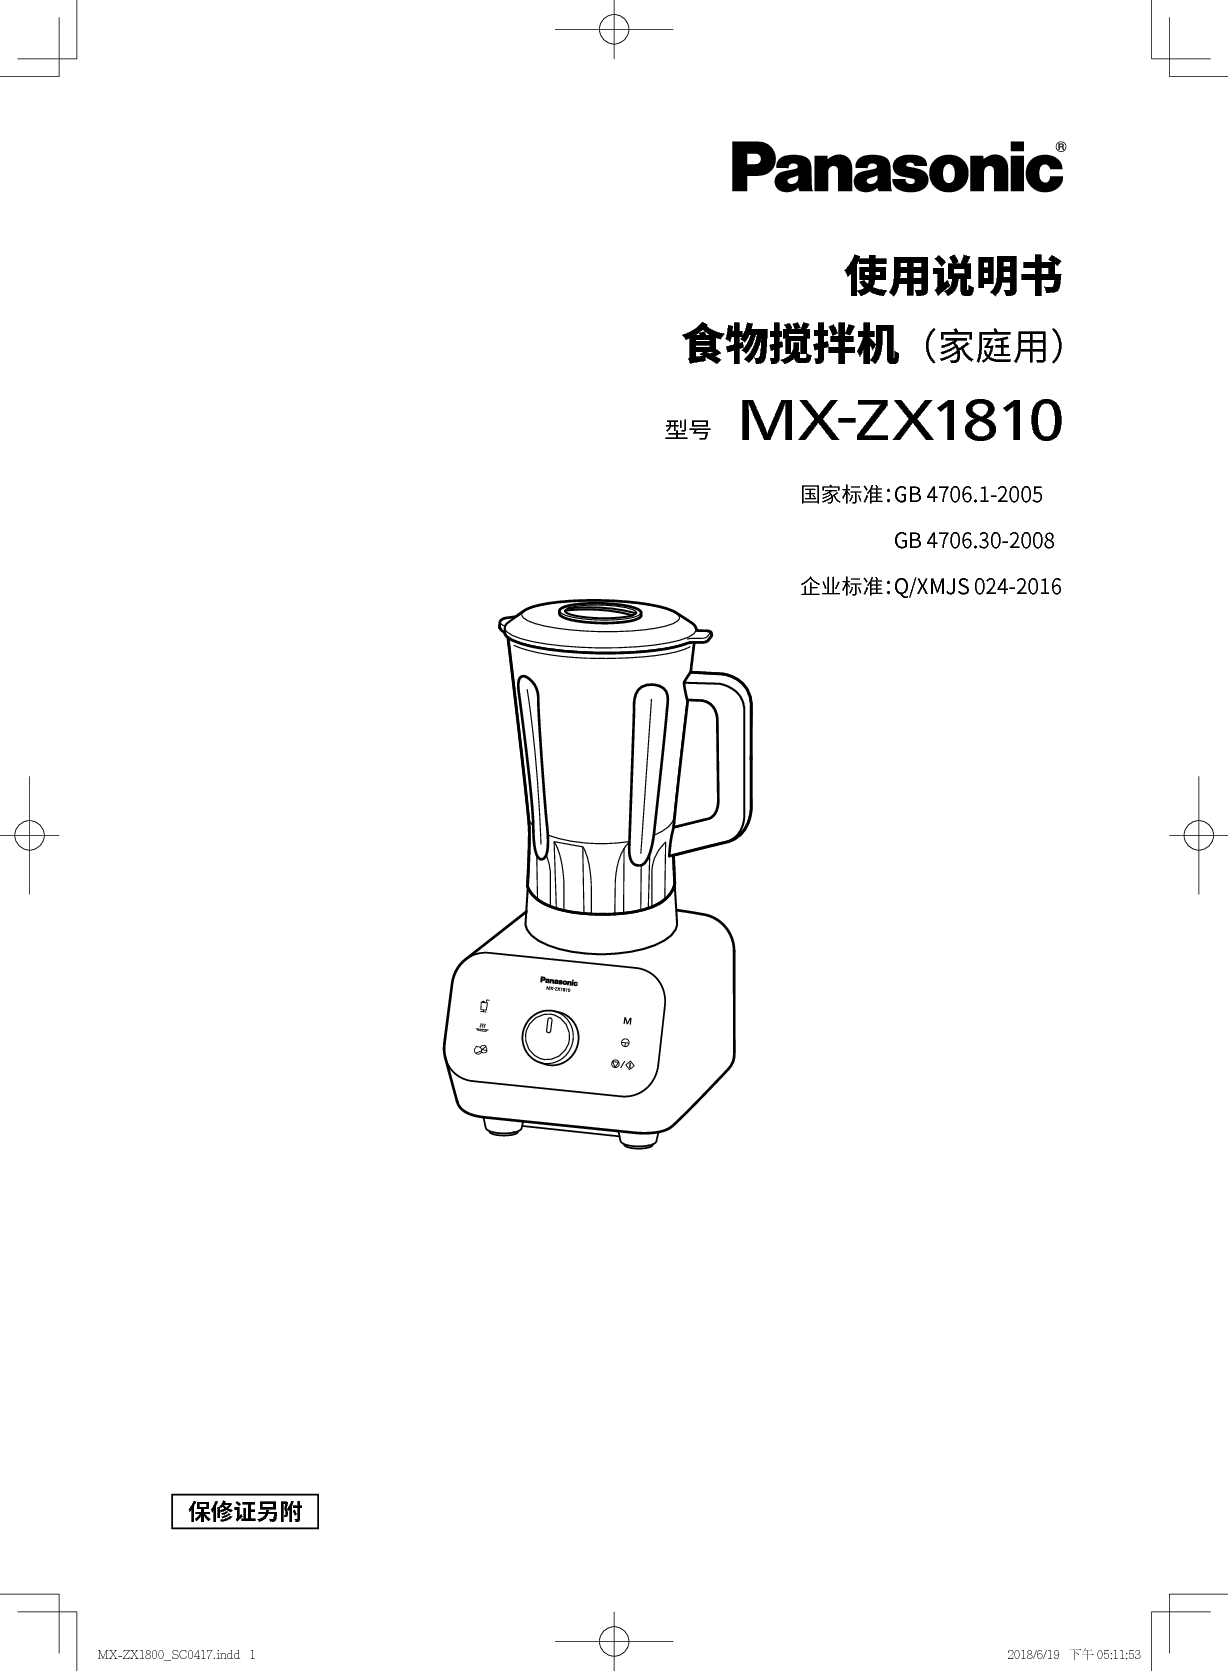 松下 Panasonic MX-ZX1810 使用说明书 第1页